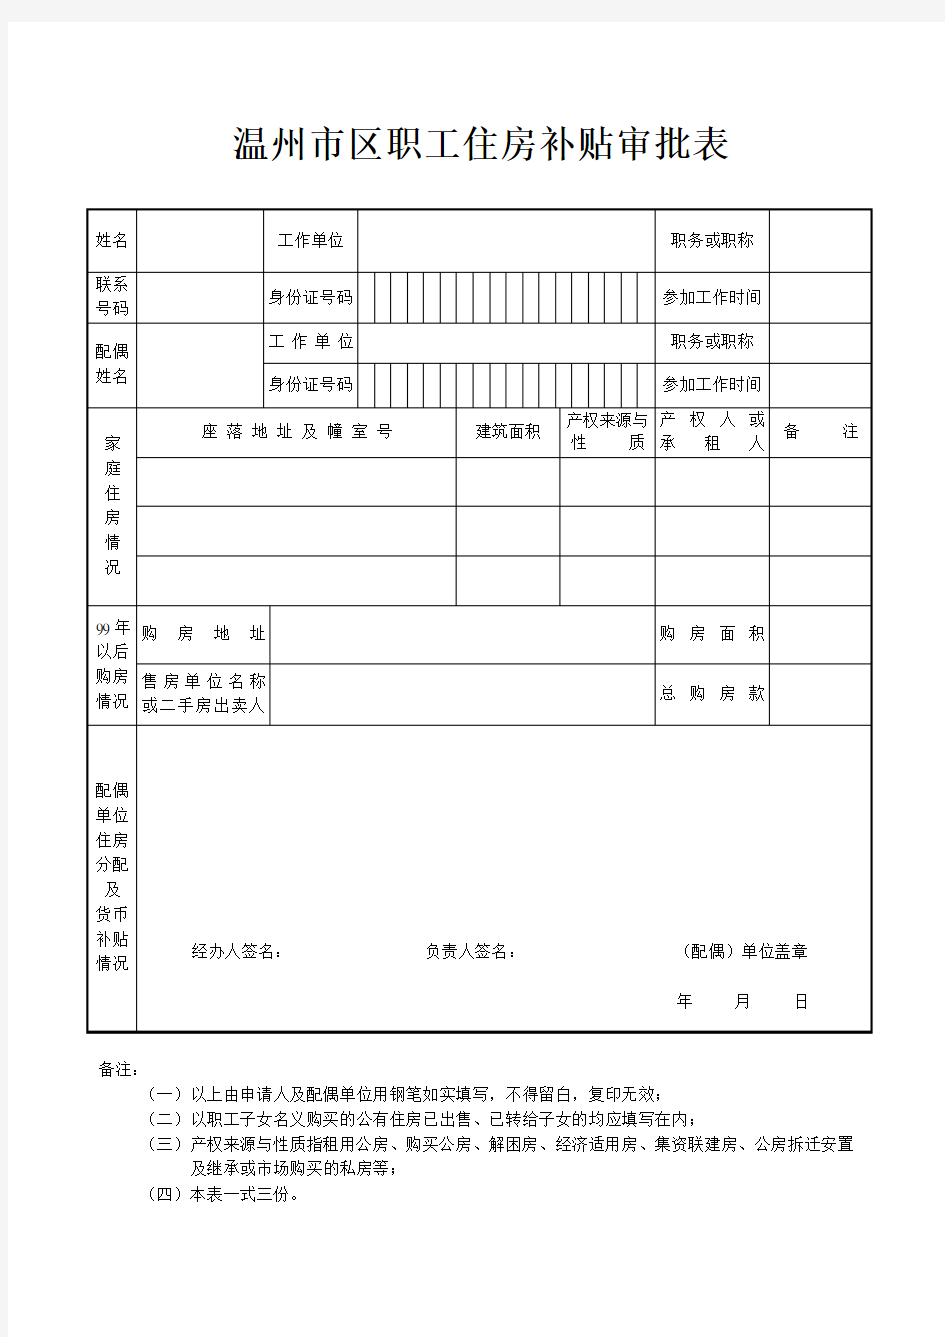 温州市区职工住房补贴审批表(一次性货币补贴)